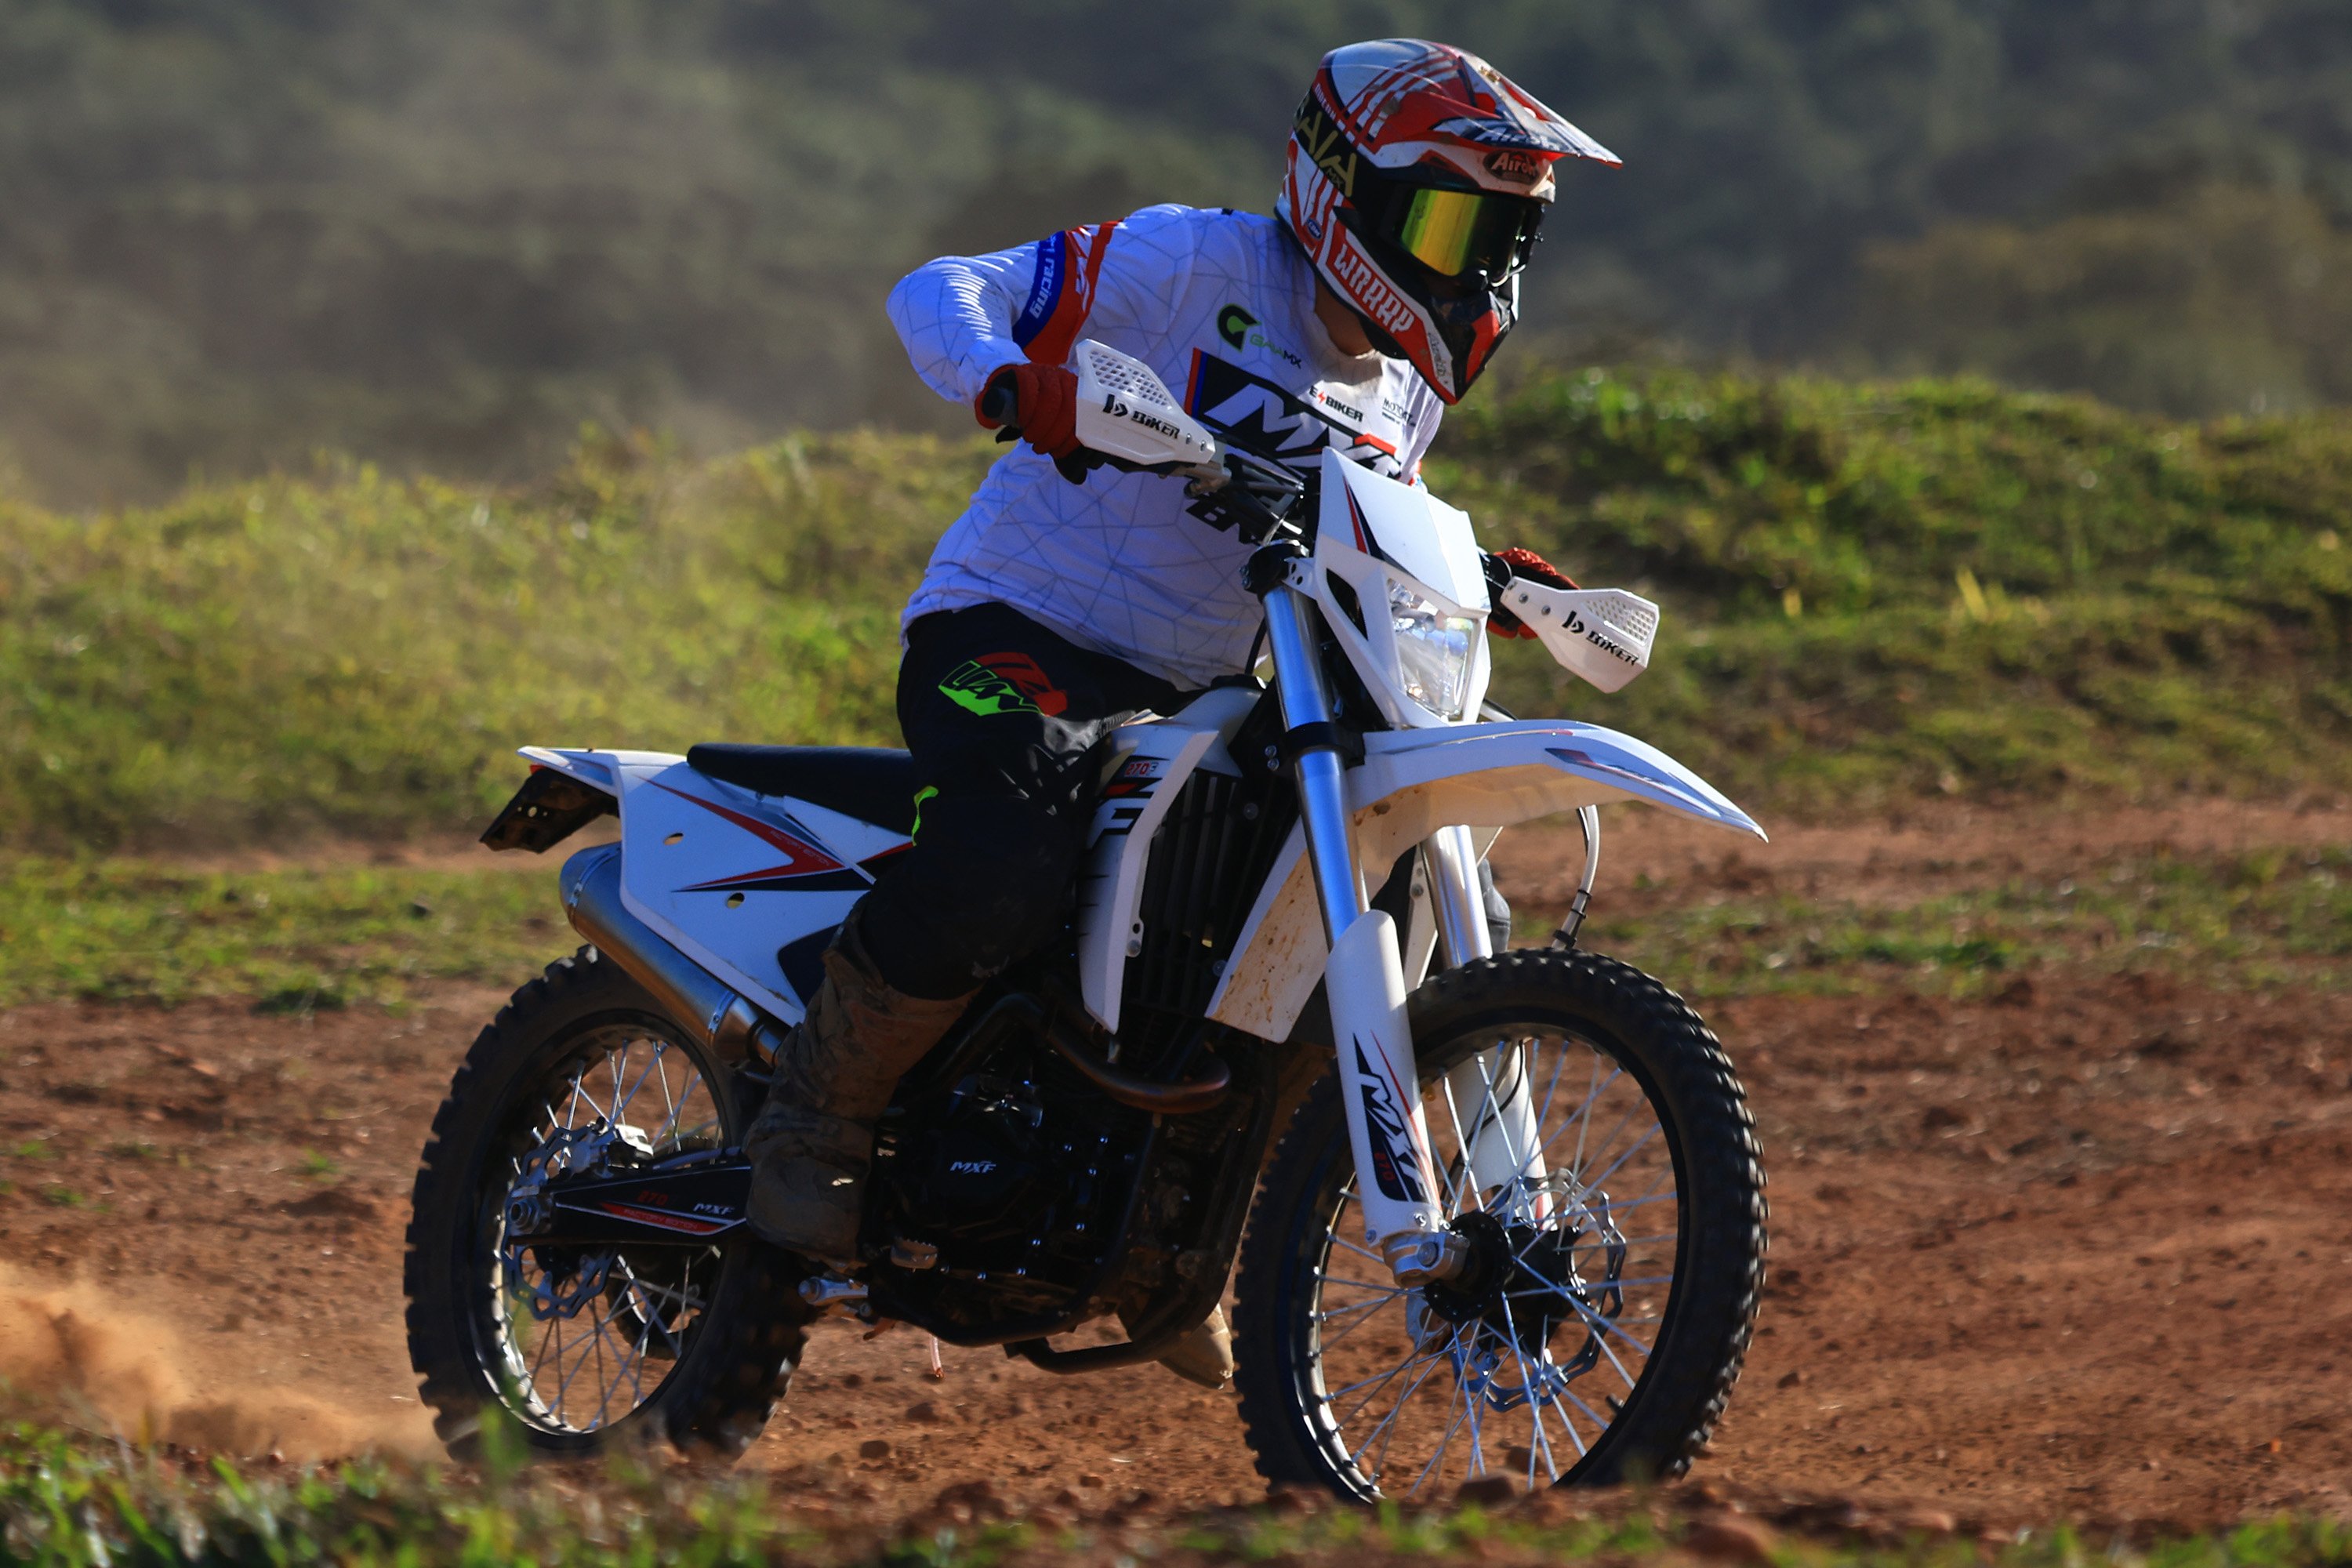 Brasileira MXF lança moto dois tempos para trilha - moto.com.br